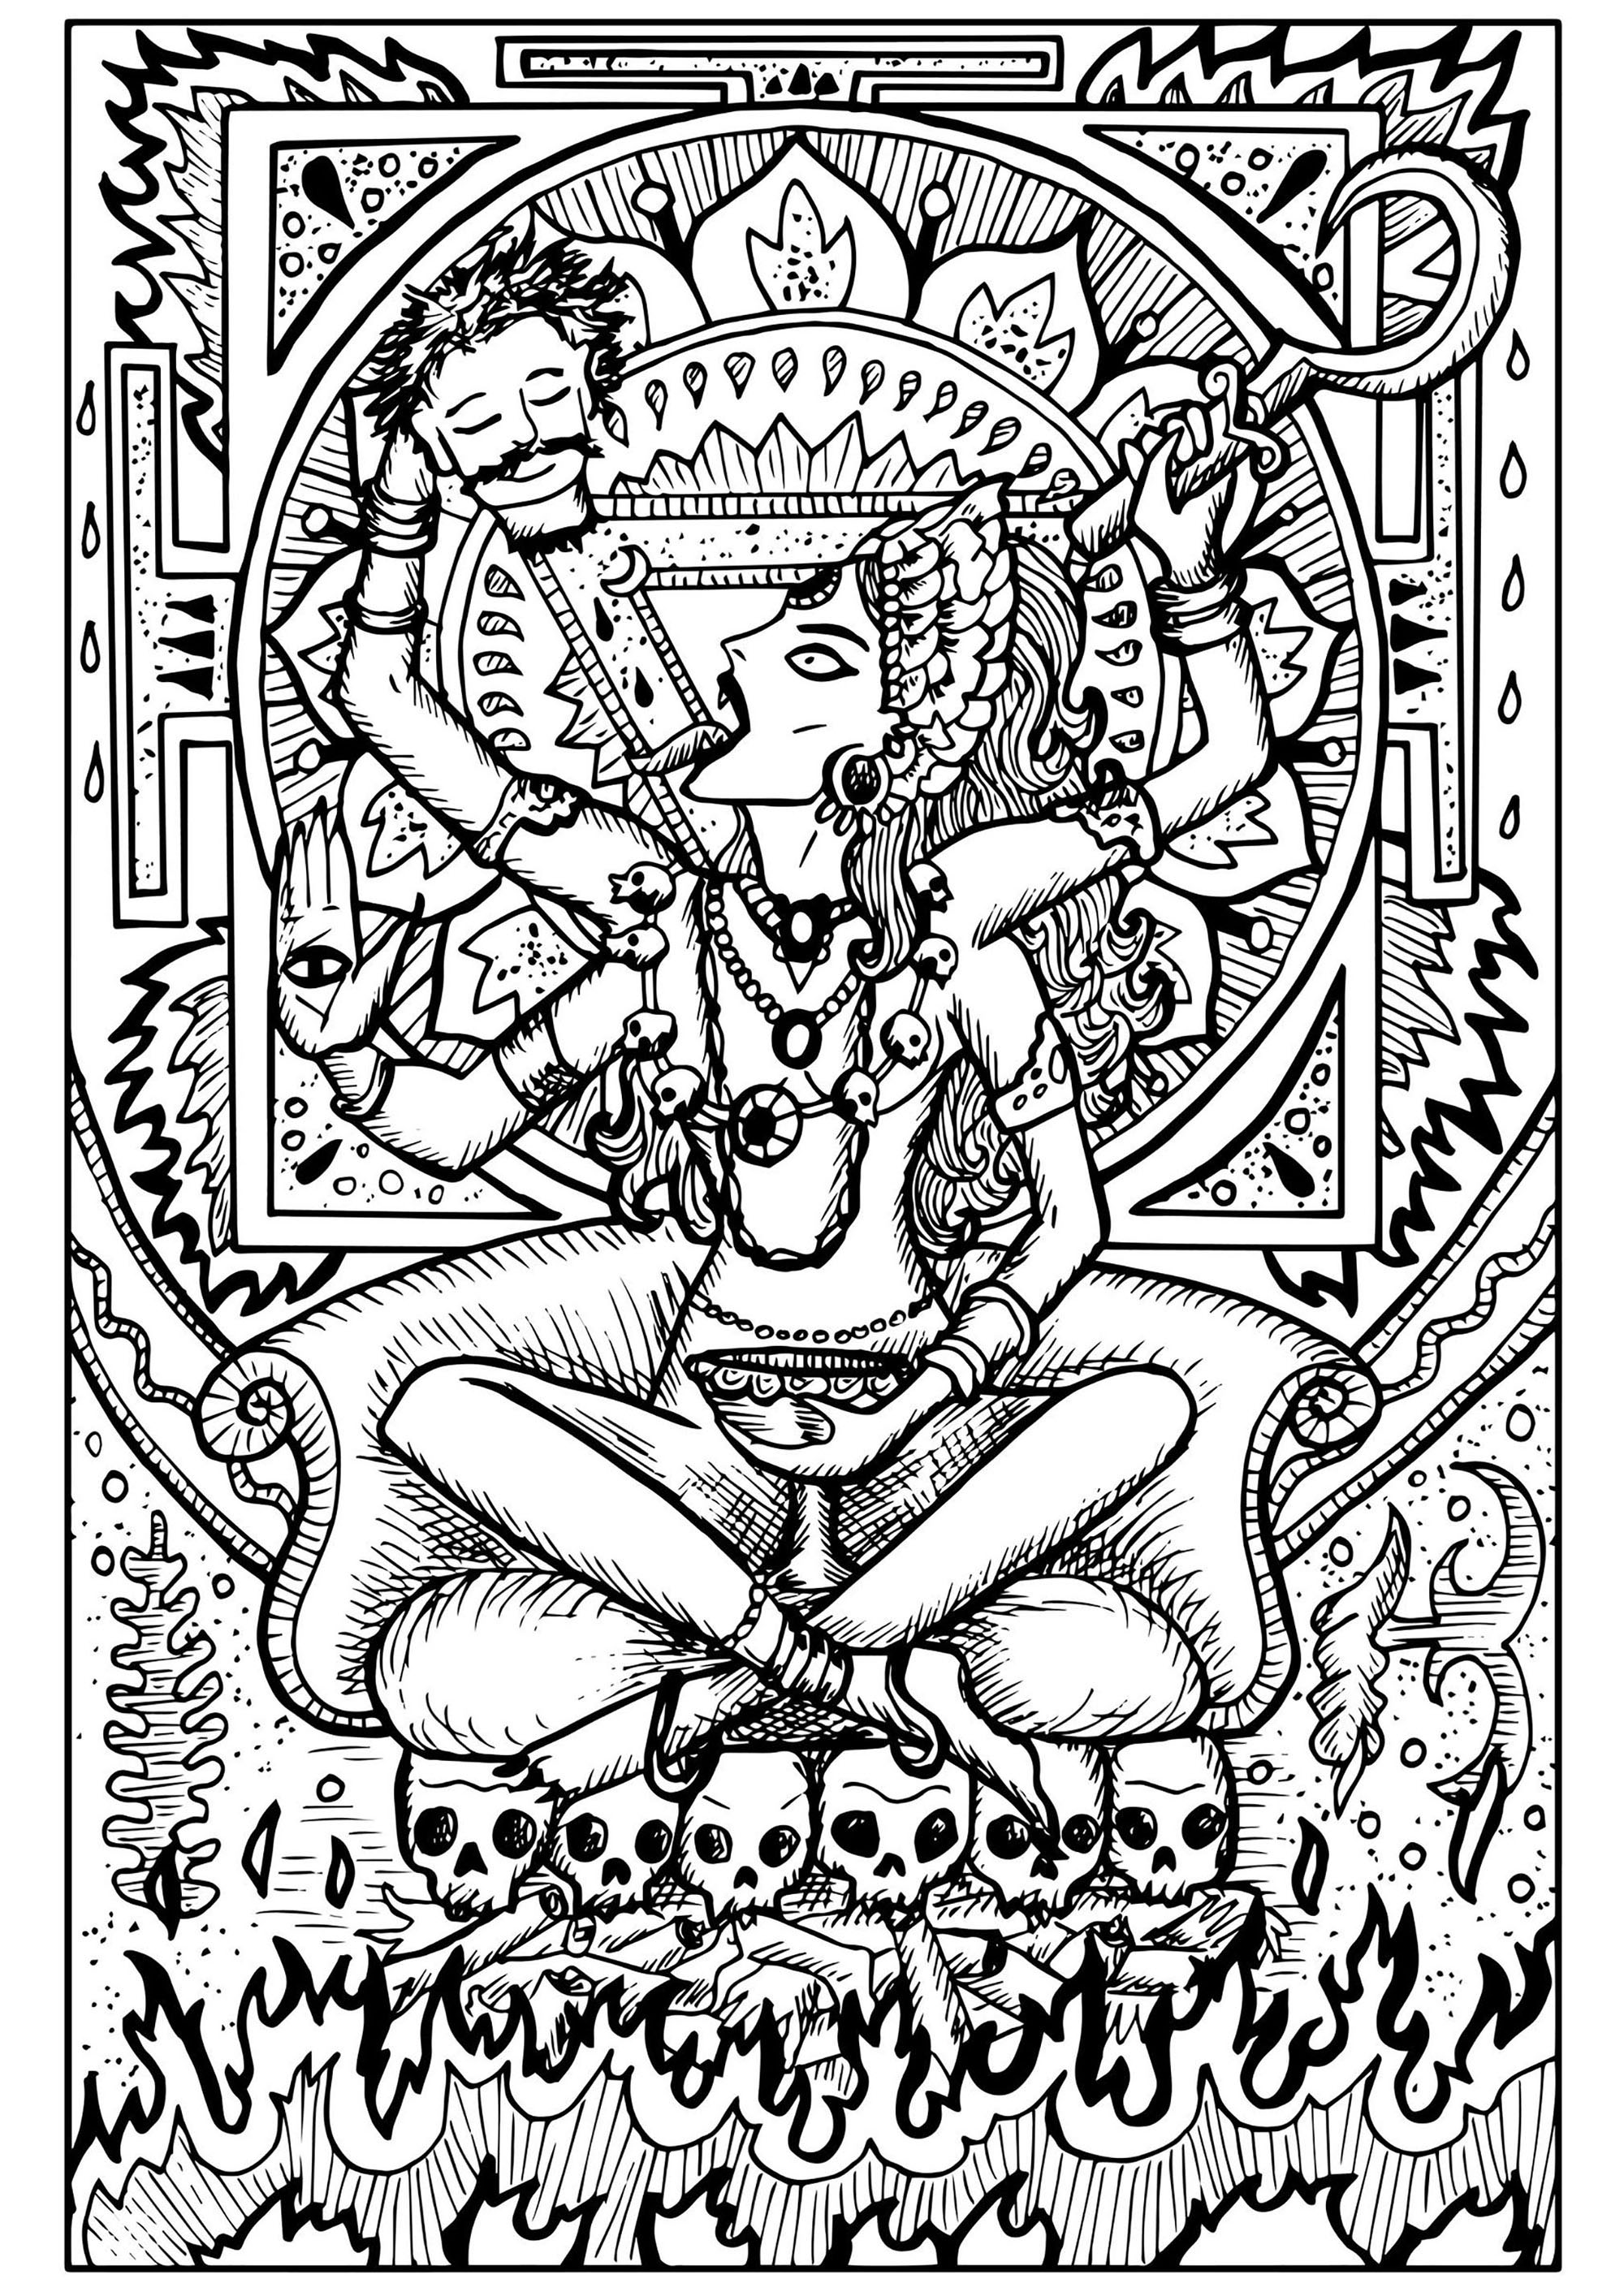 Kali é a deusa da preservação, transformação e destruição (no Hinduísmo). Ela remove o ego e liberta a alma do ciclo de nascimento e morte.